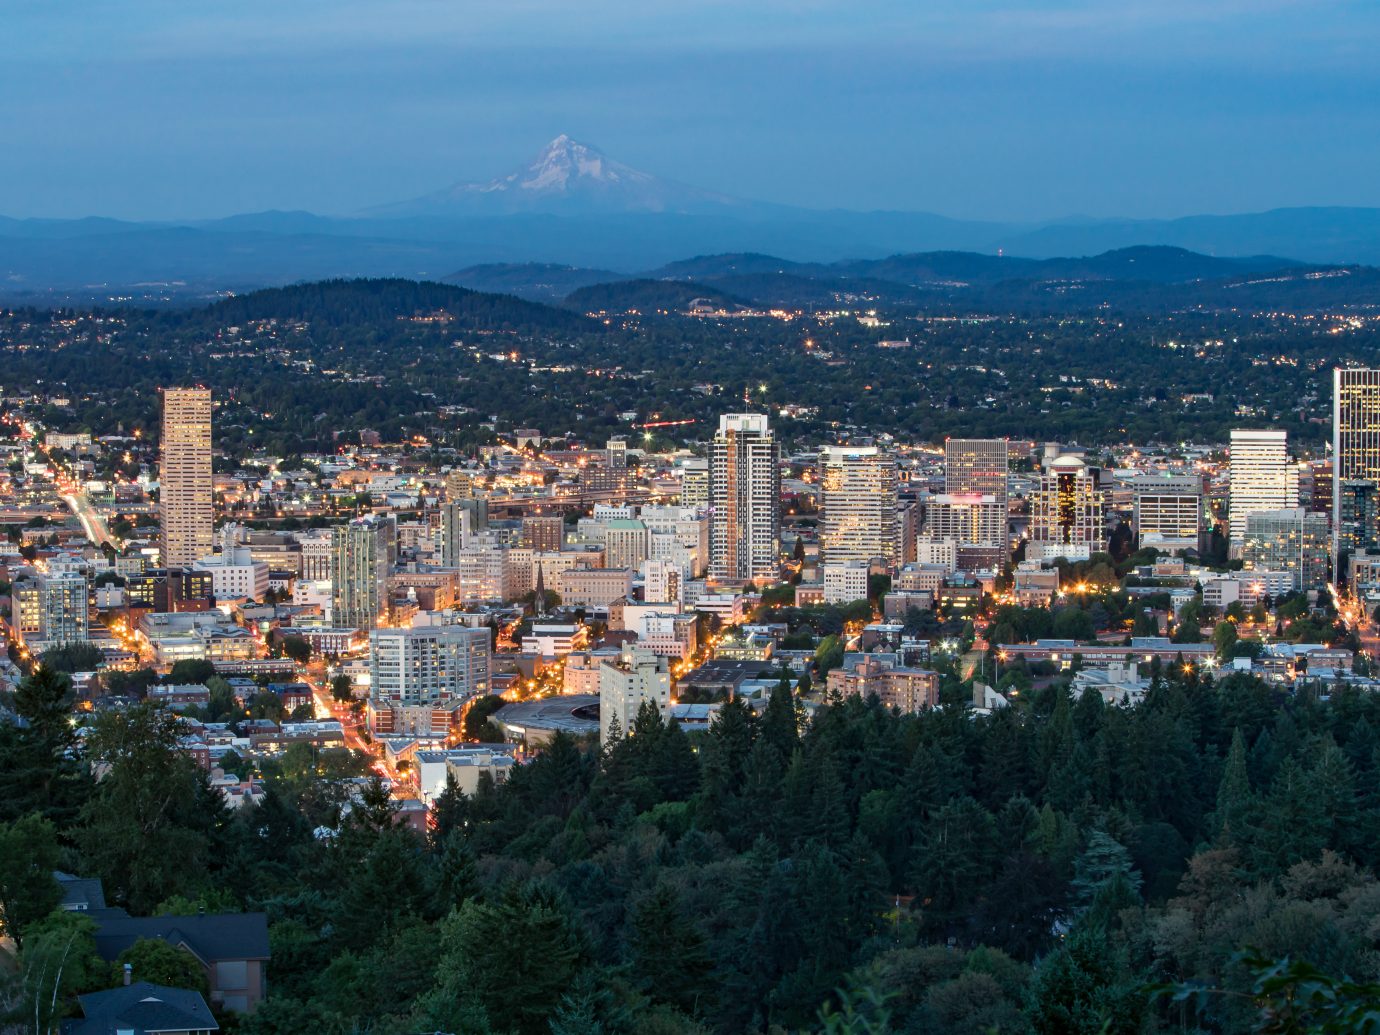 Night City Skyline of Portland, Oregon